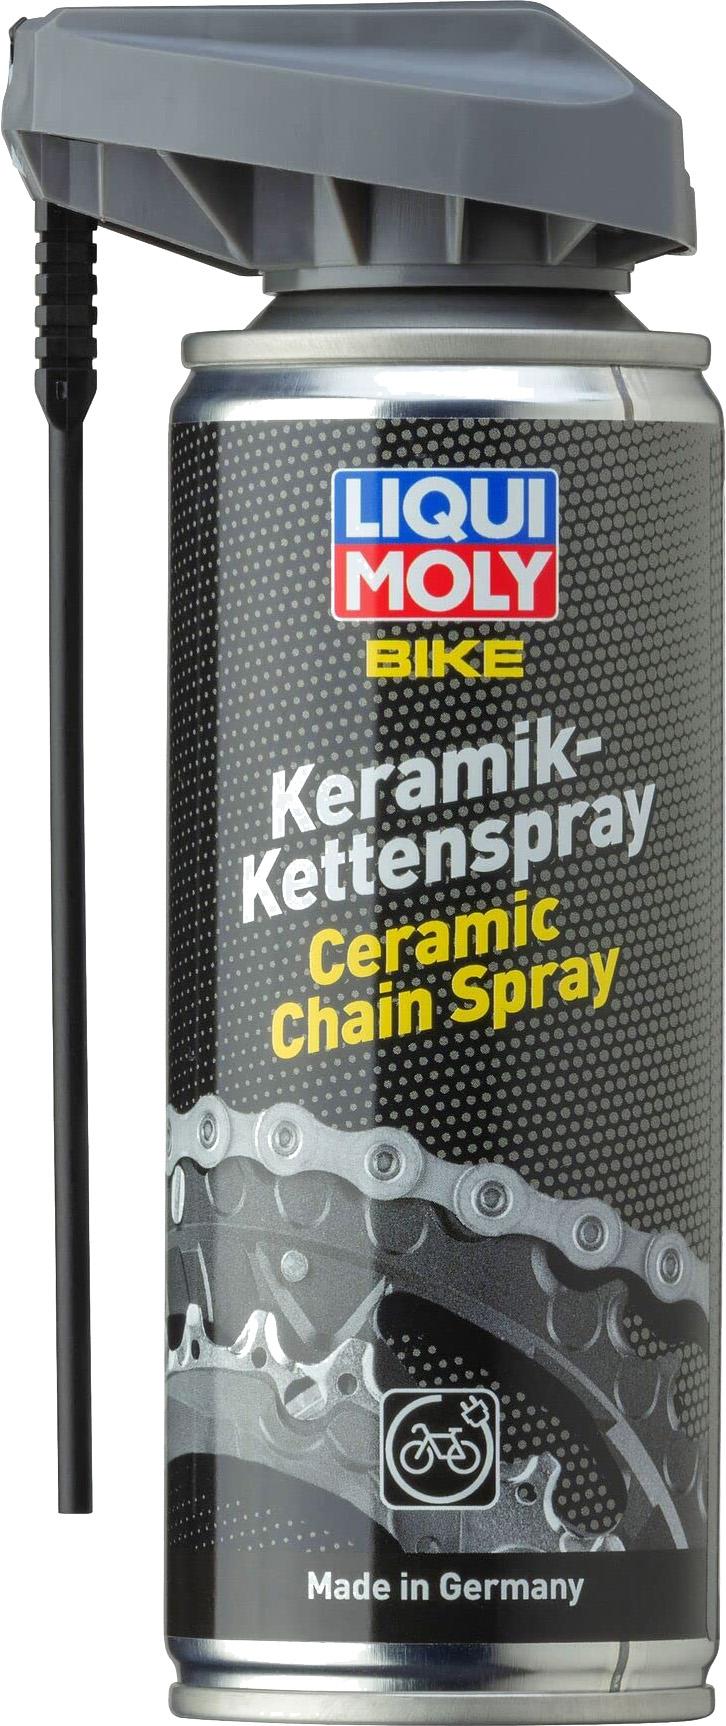 Liqui Moly Bike Ceramic Spray 200 ml lánc spray